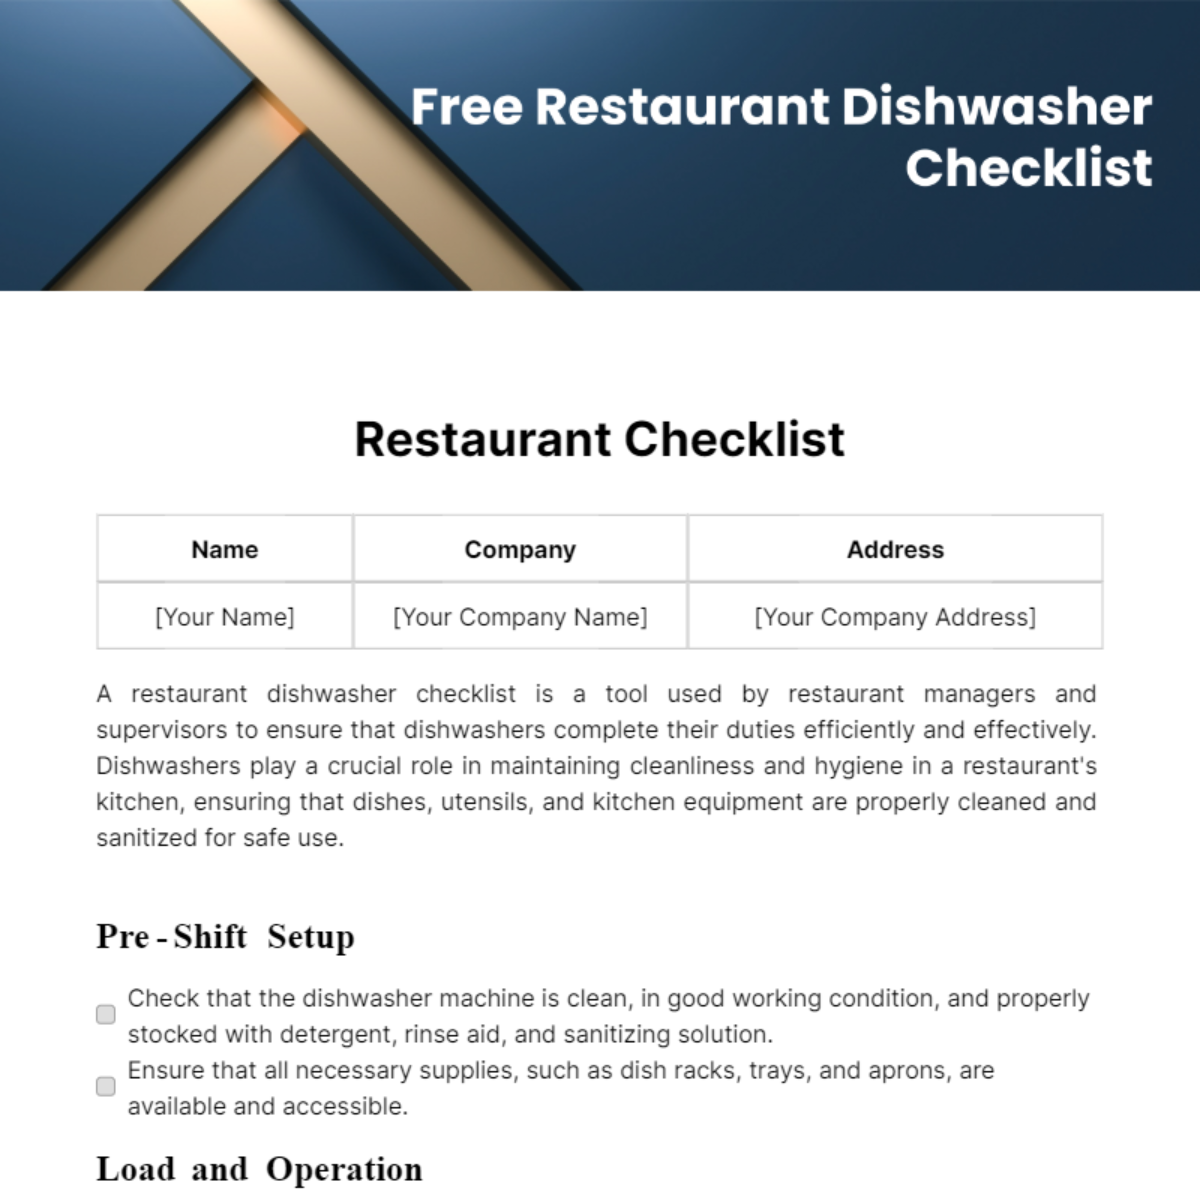 Restaurant Dishwasher Checklist Template